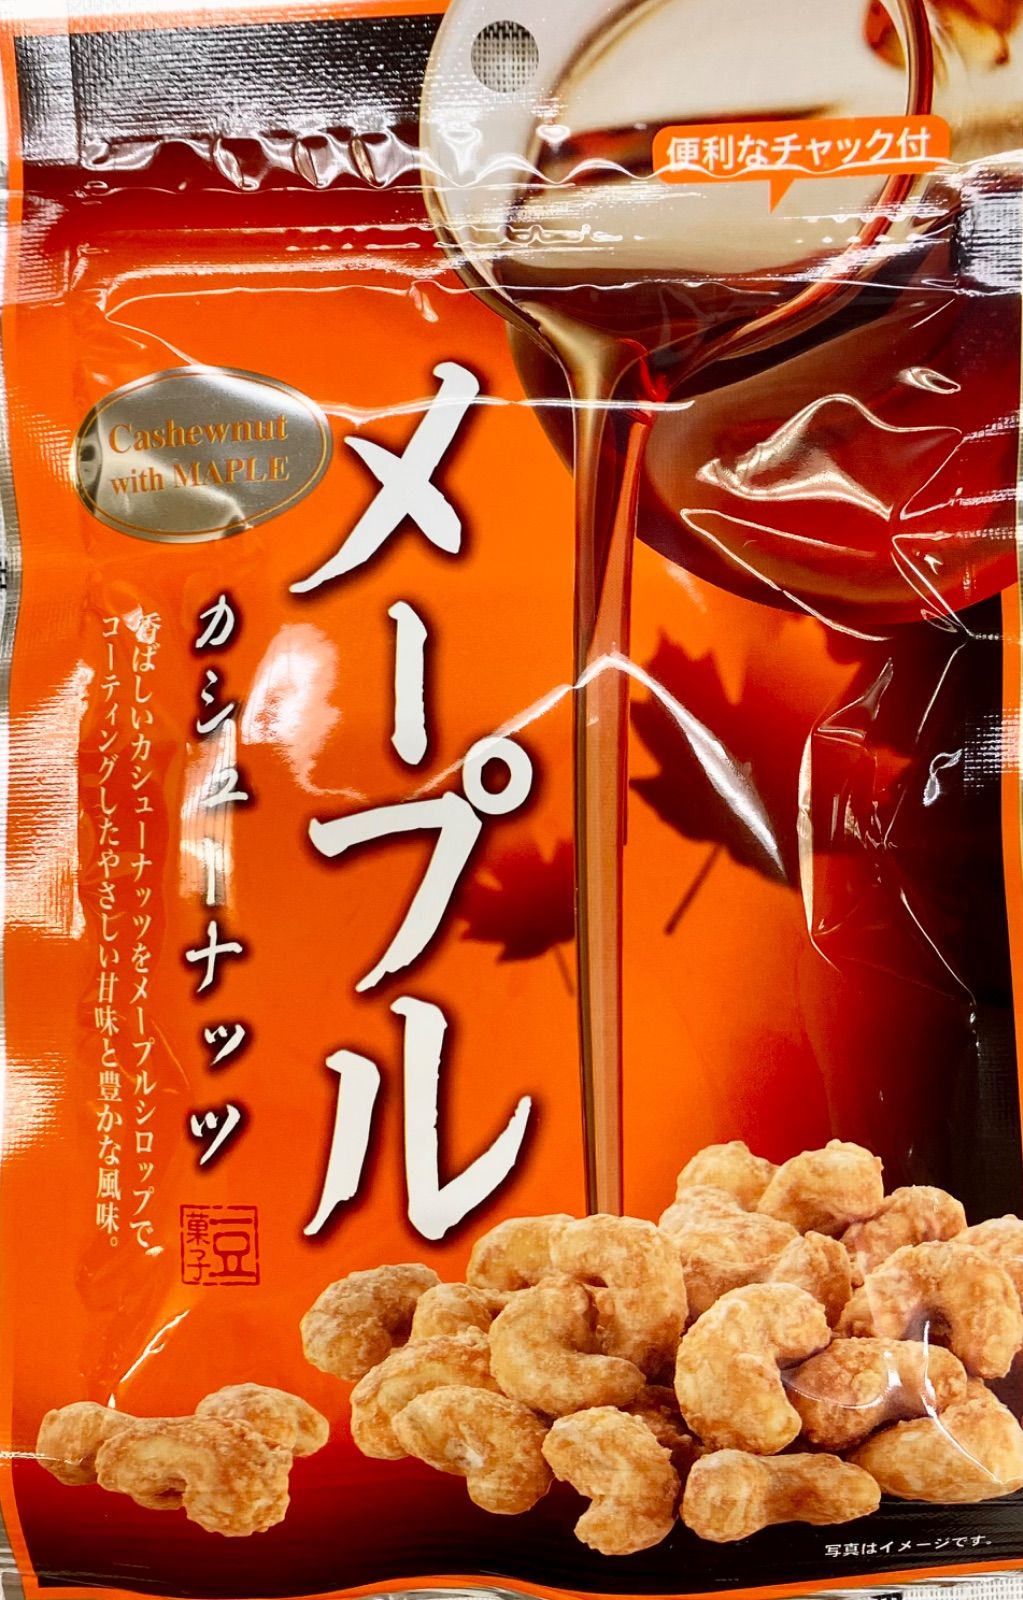 【全国送料無料】メープルカシューナッツ (47g×3袋) 豆菓子-4